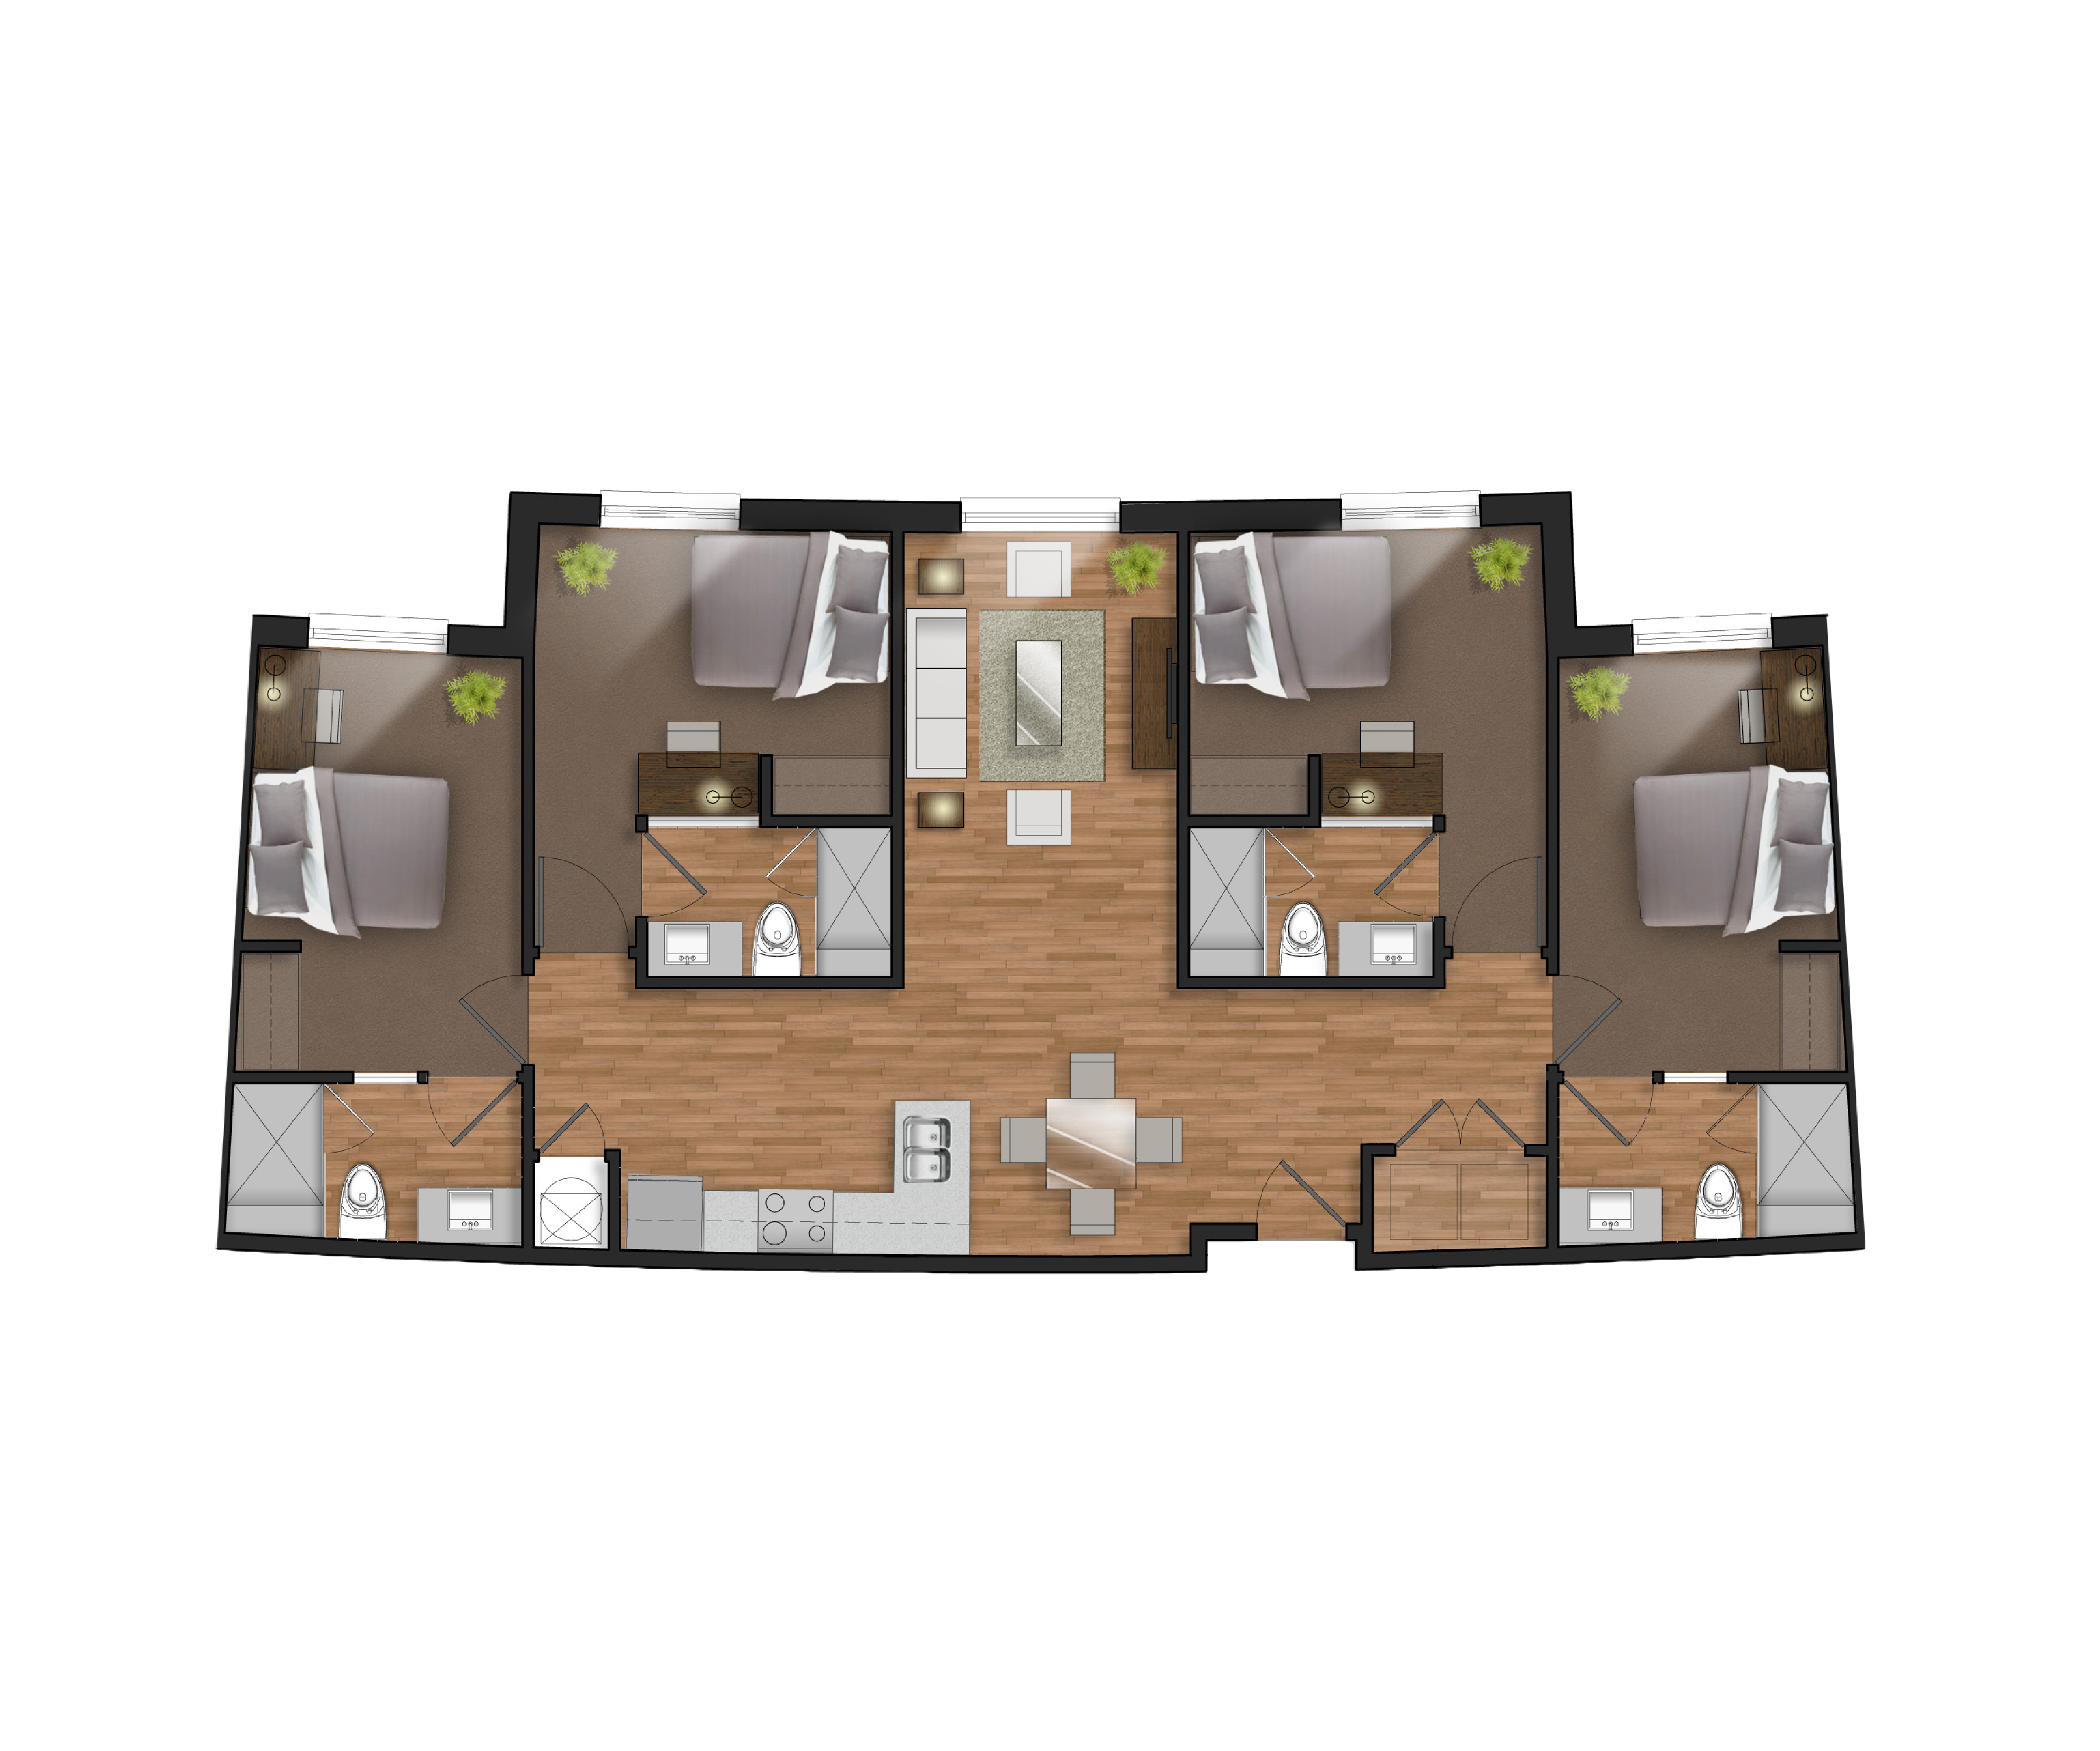 4 bedroom student apartment floor plan